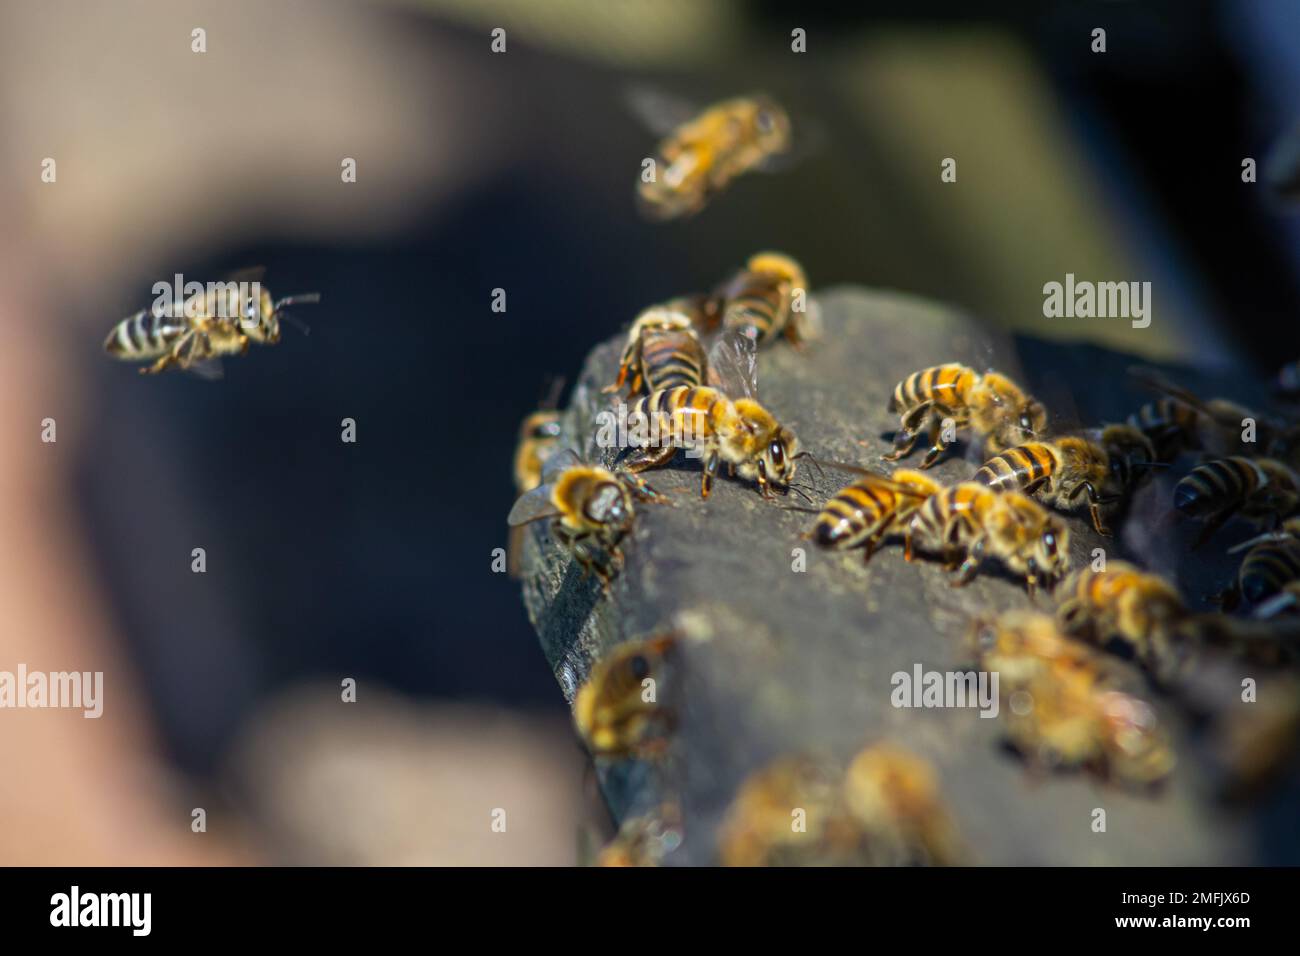 essaim d'abeilles volant autour de ruches. Les abeilles revenant de la collecte de miel volent de retour à la ruche. Abeilles domestiques, apiculture concept. Banque D'Images